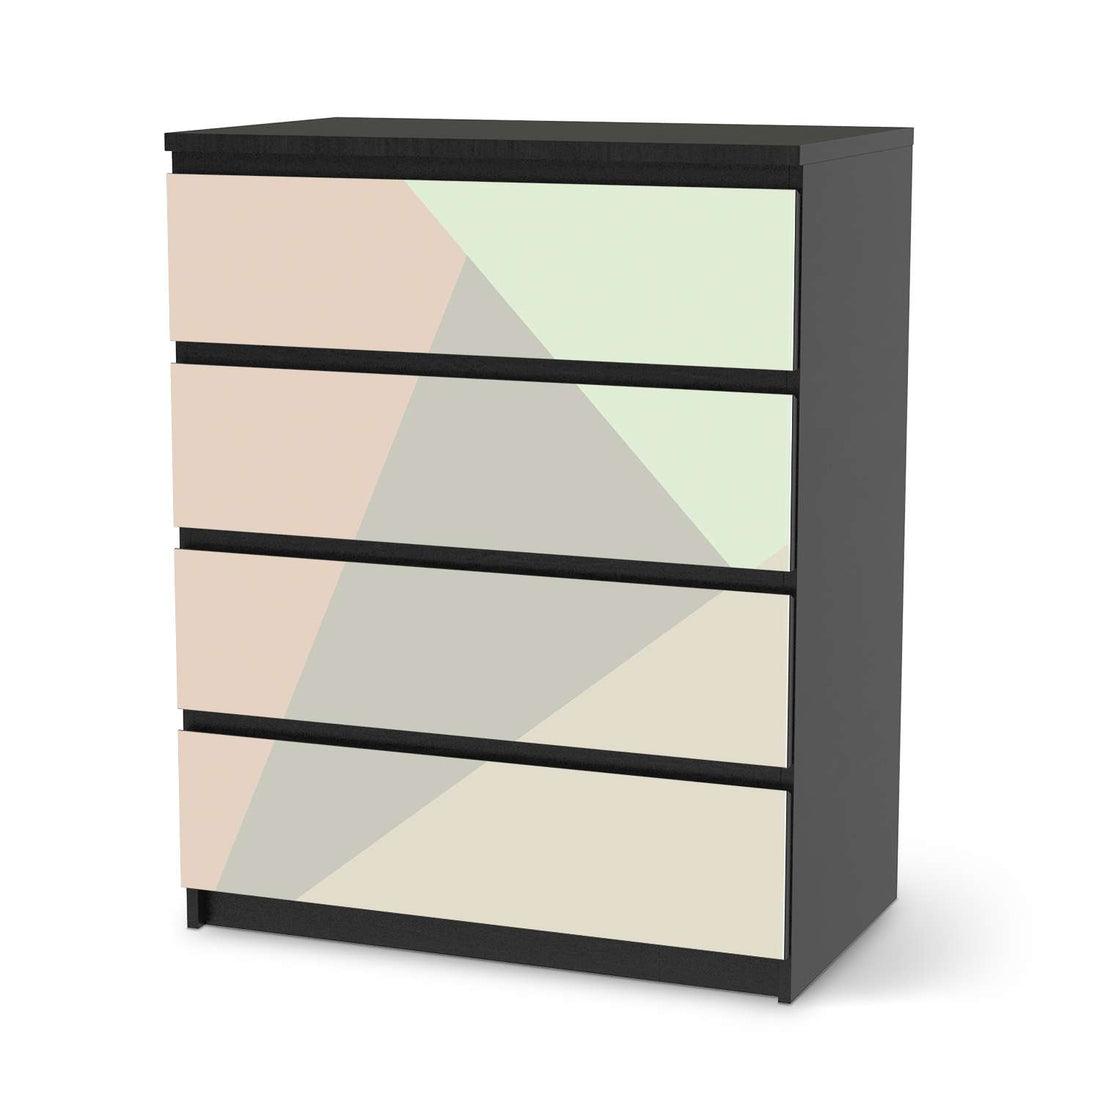 Folie für Möbel Pastell Geometrik - IKEA Malm Kommode 4 Schubladen - schwarz